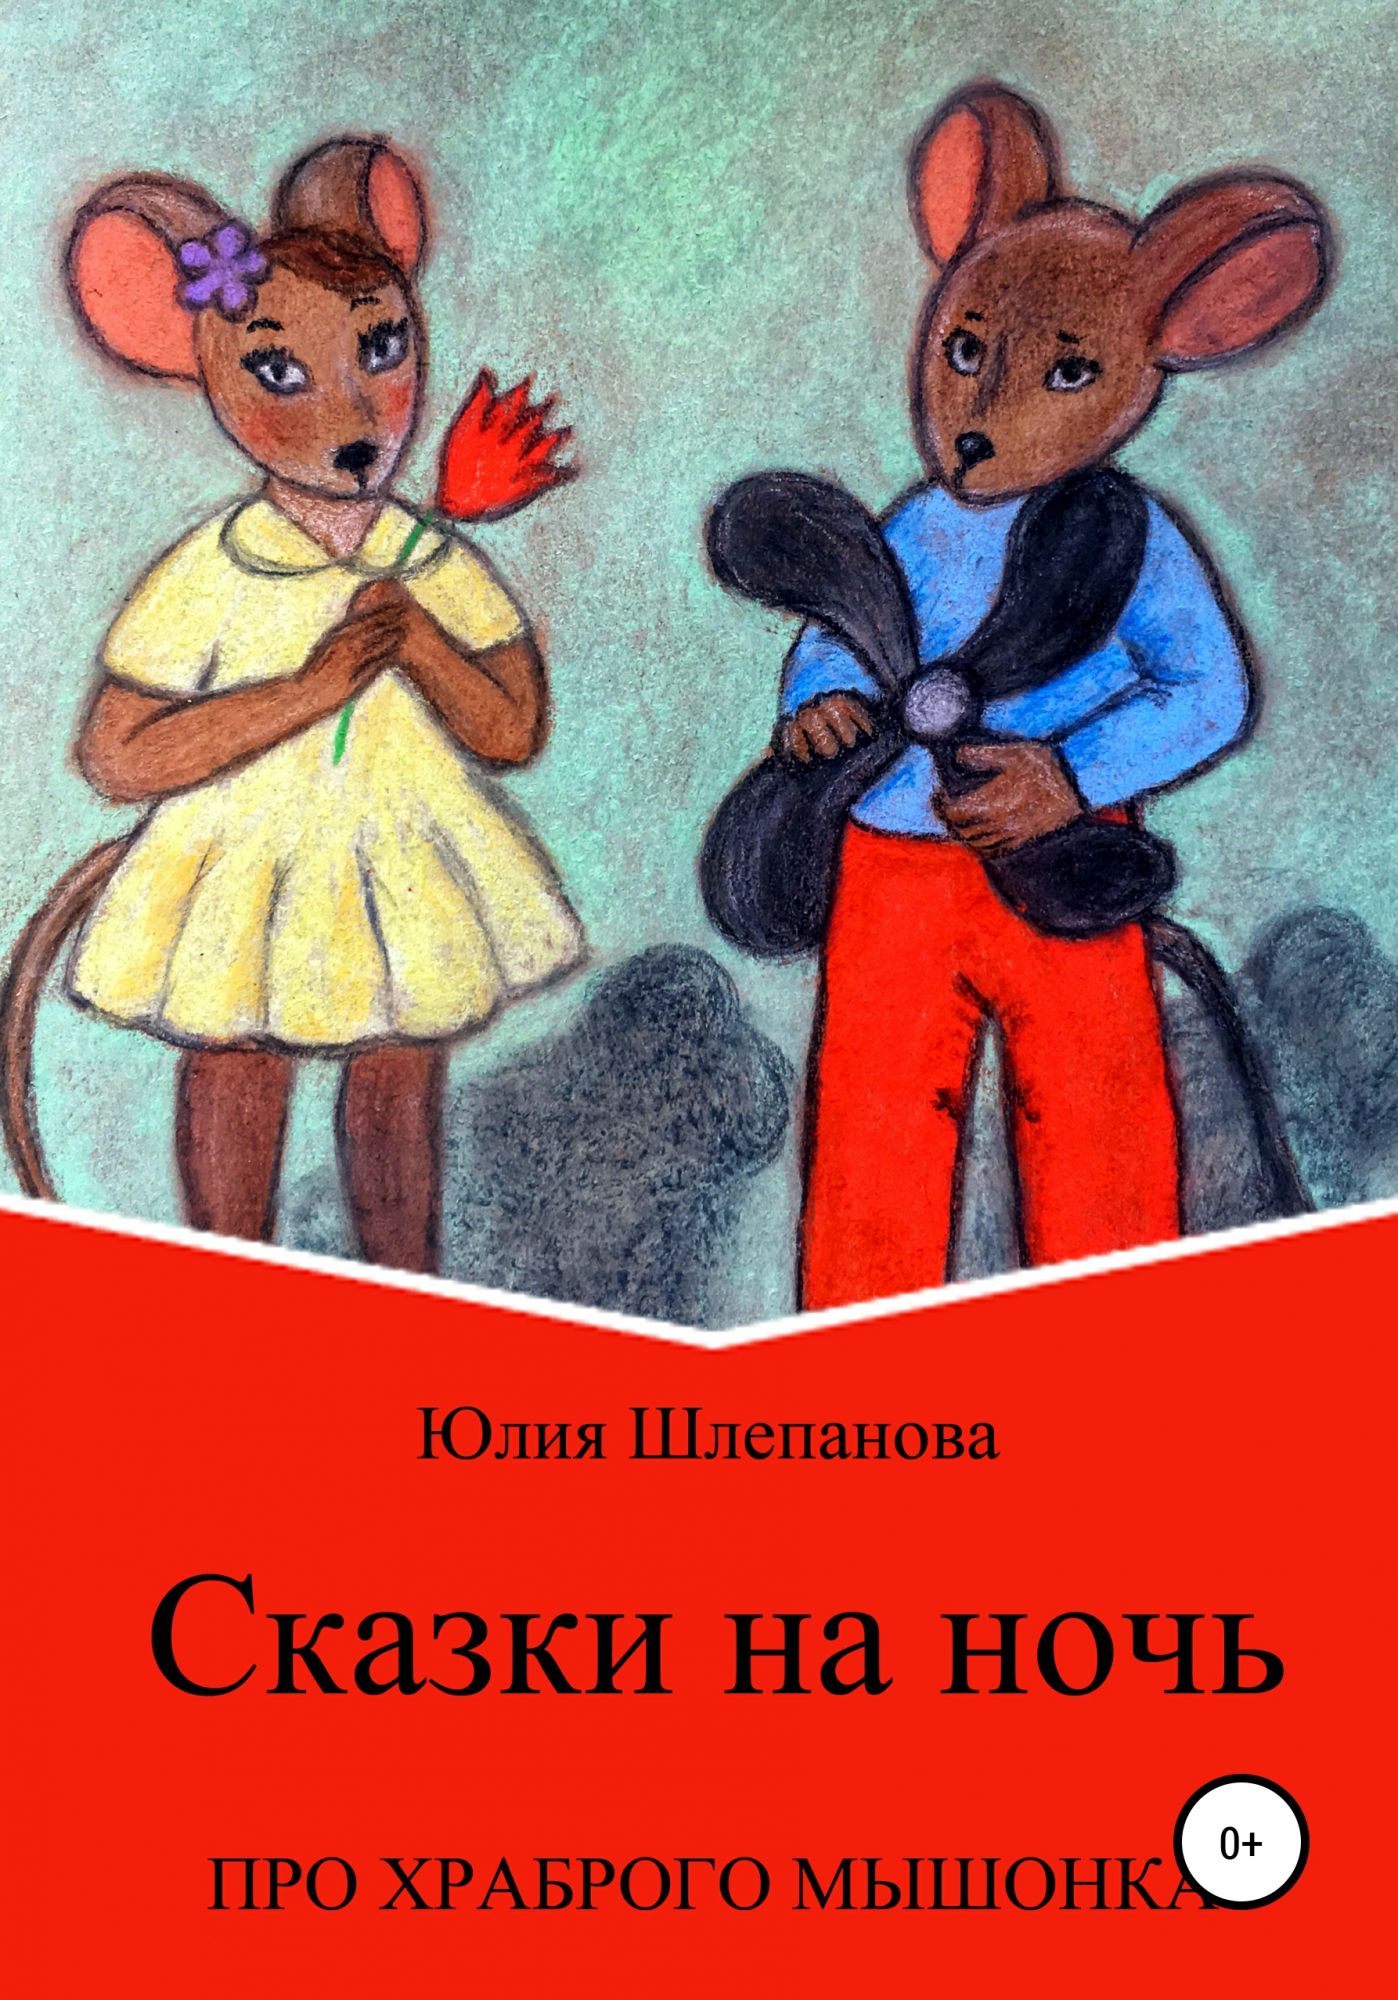 Шлепаново. Храбрый мышонок. Книга про храброго мышонка. Храбрый мышонок сказка. Смелый мышонок книга.